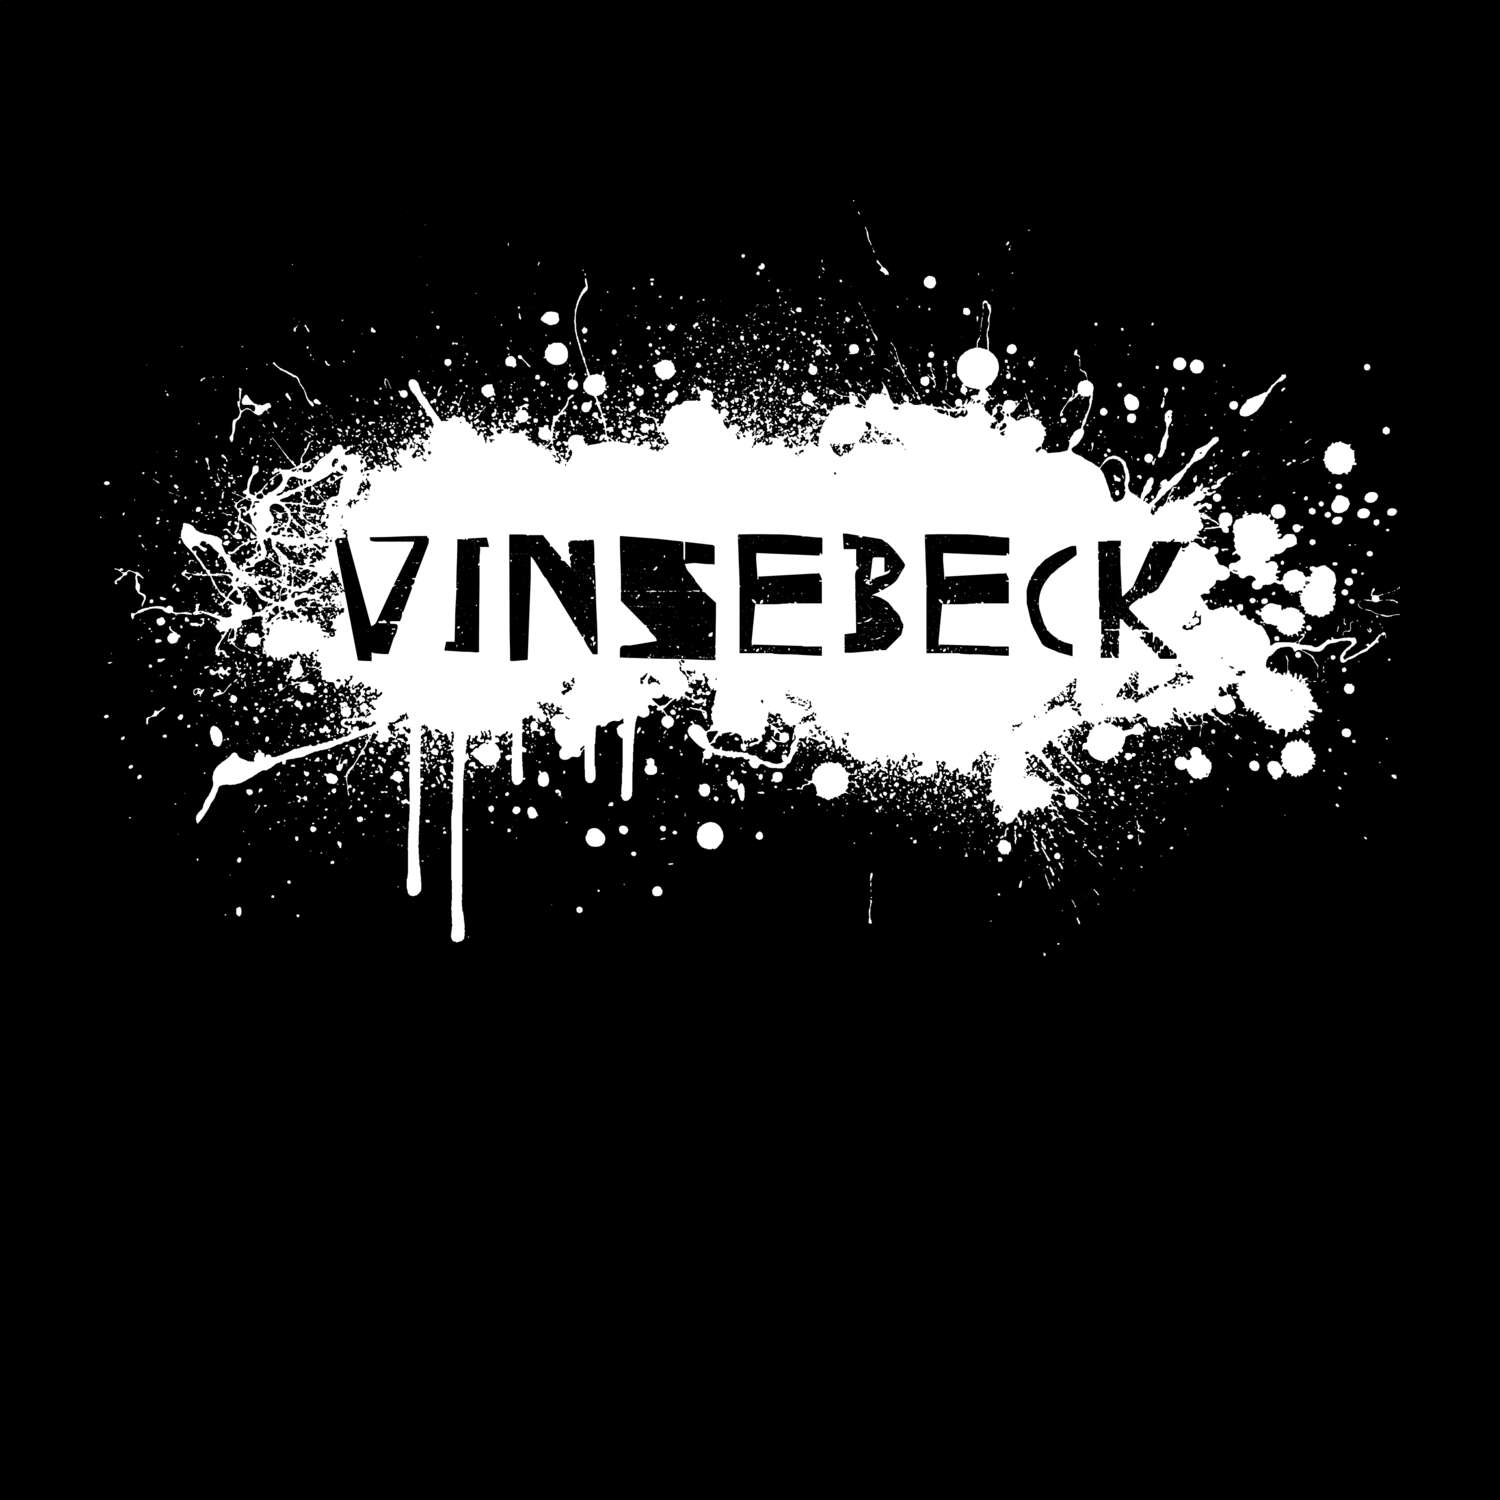 Vinsebeck T-Shirt »Paint Splash Punk«